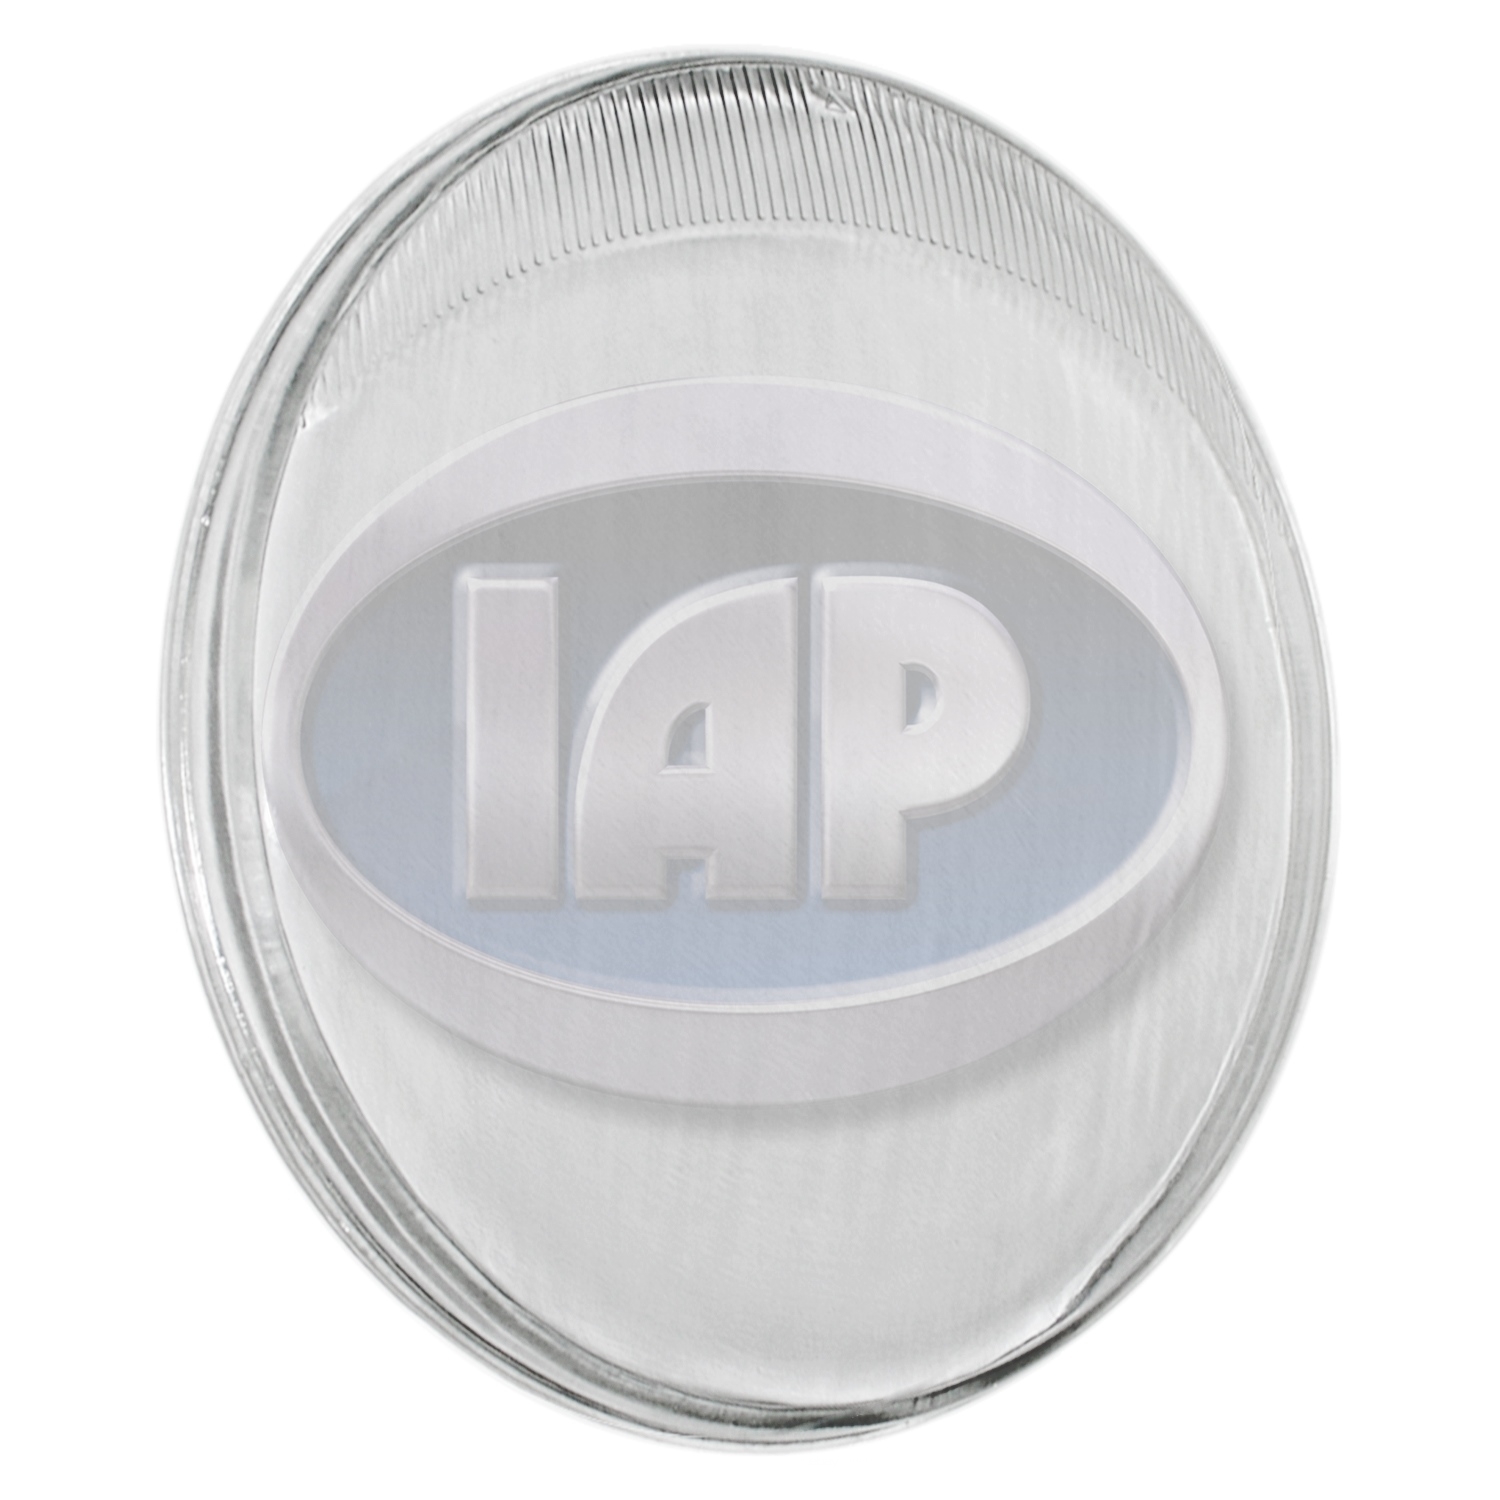 IAP/KUHLTEK MOTORWERKS - Headlight Lens (Front Left) - KMS 111941115H